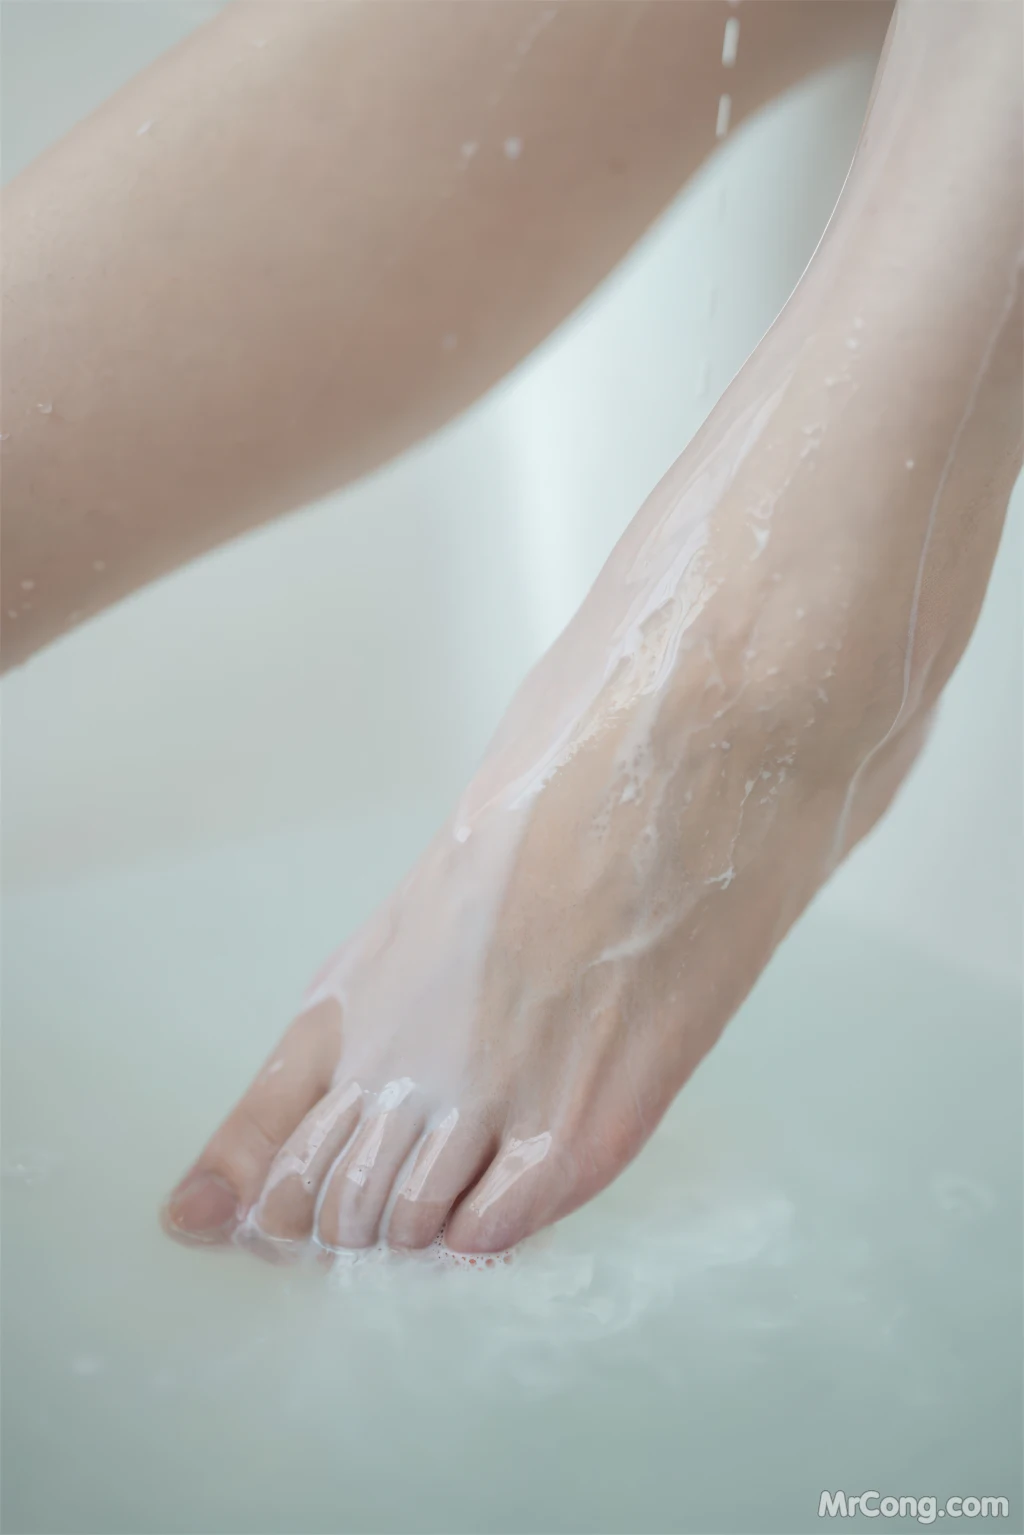 Coser@雪晴Astra (雪晴嘟嘟) Vol.046: 浴缸牛奶 (62 photos)